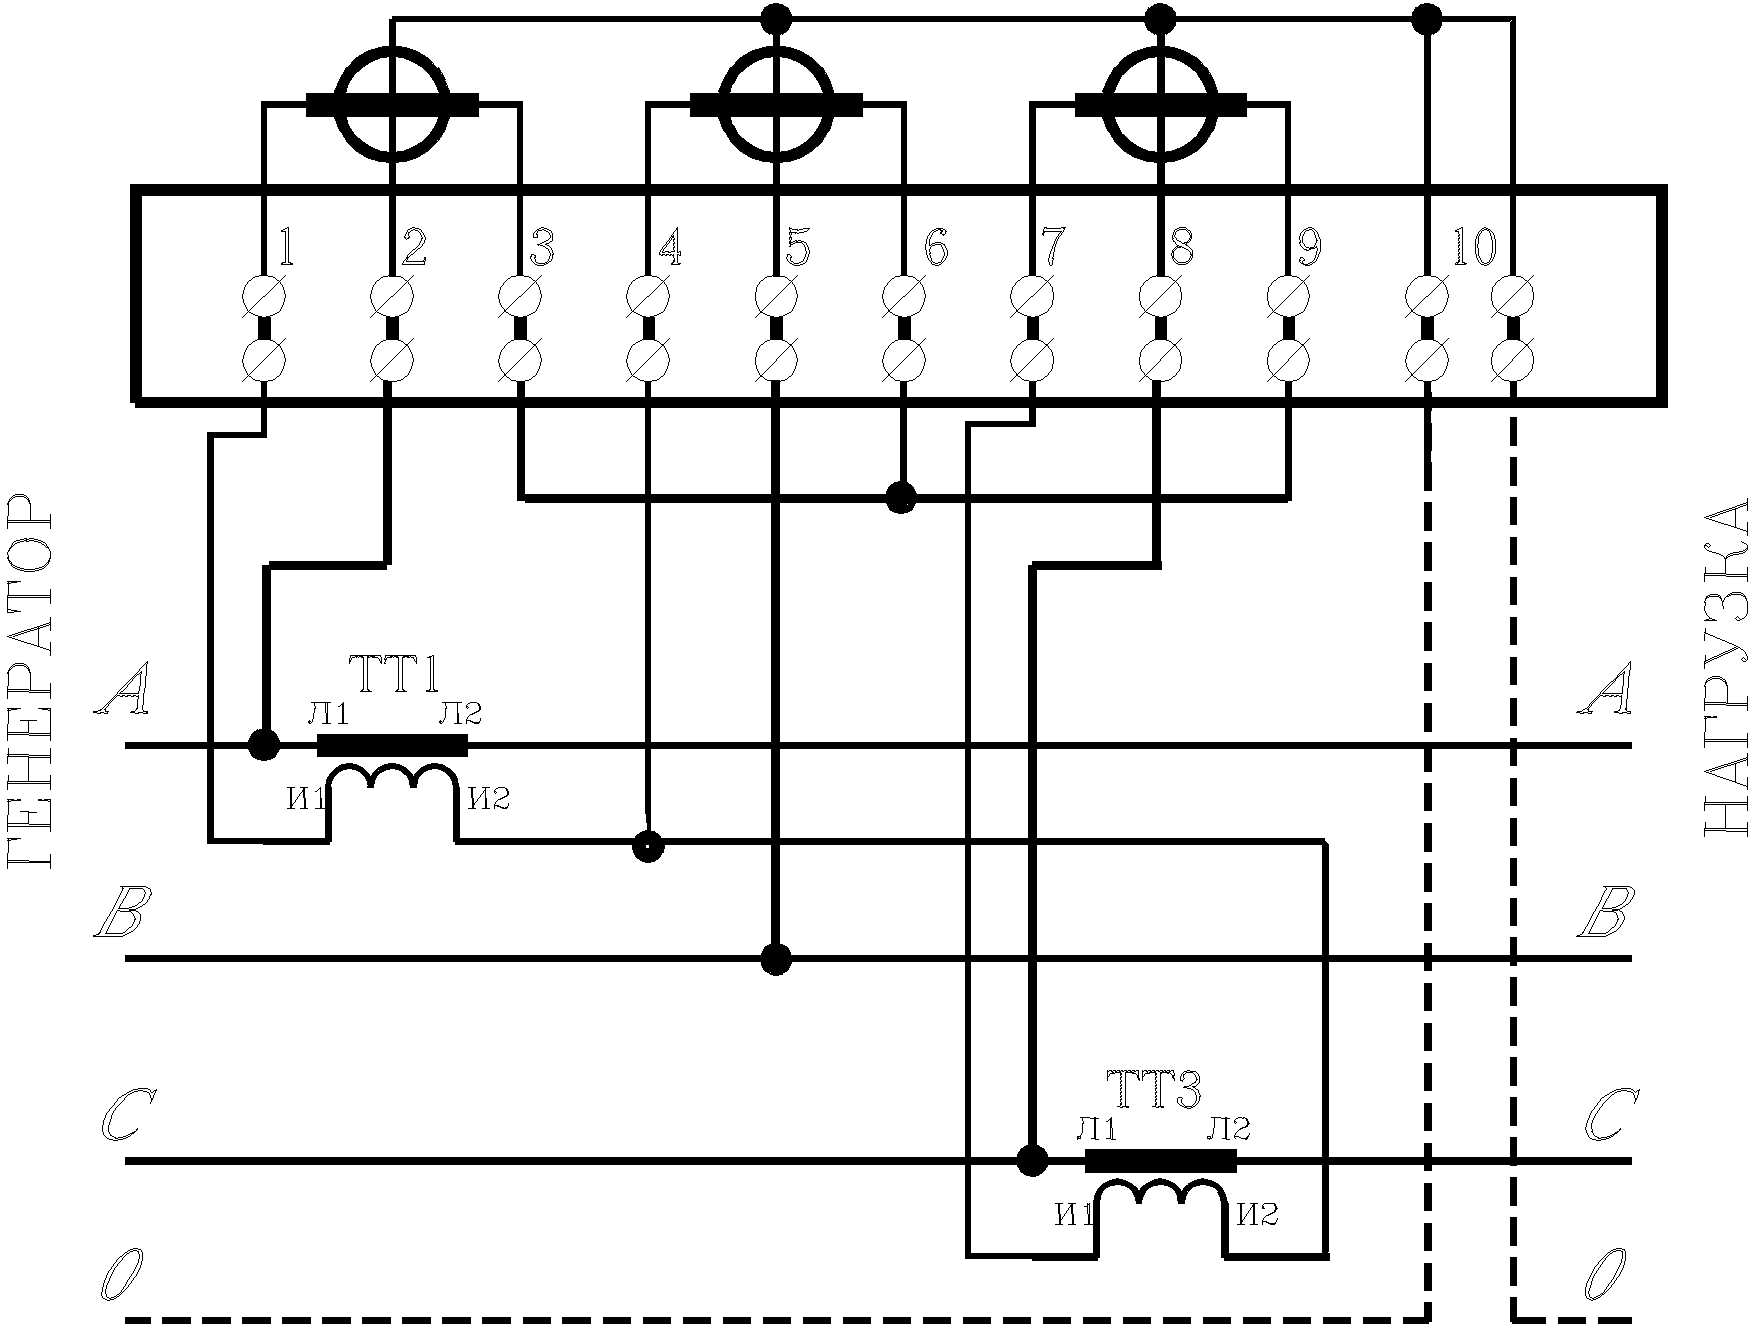 Трехфазные счетчики через трансформаторы тока. Схема подключения трехфазного счетчика через трансформаторы тока. Схема подключения счетчика через 2 трансформатора тока. Схема подключения счетчика через трансформаторы тока 0.4кв. Схема соединения 3х фазного счетчика с трансформаторами тока.